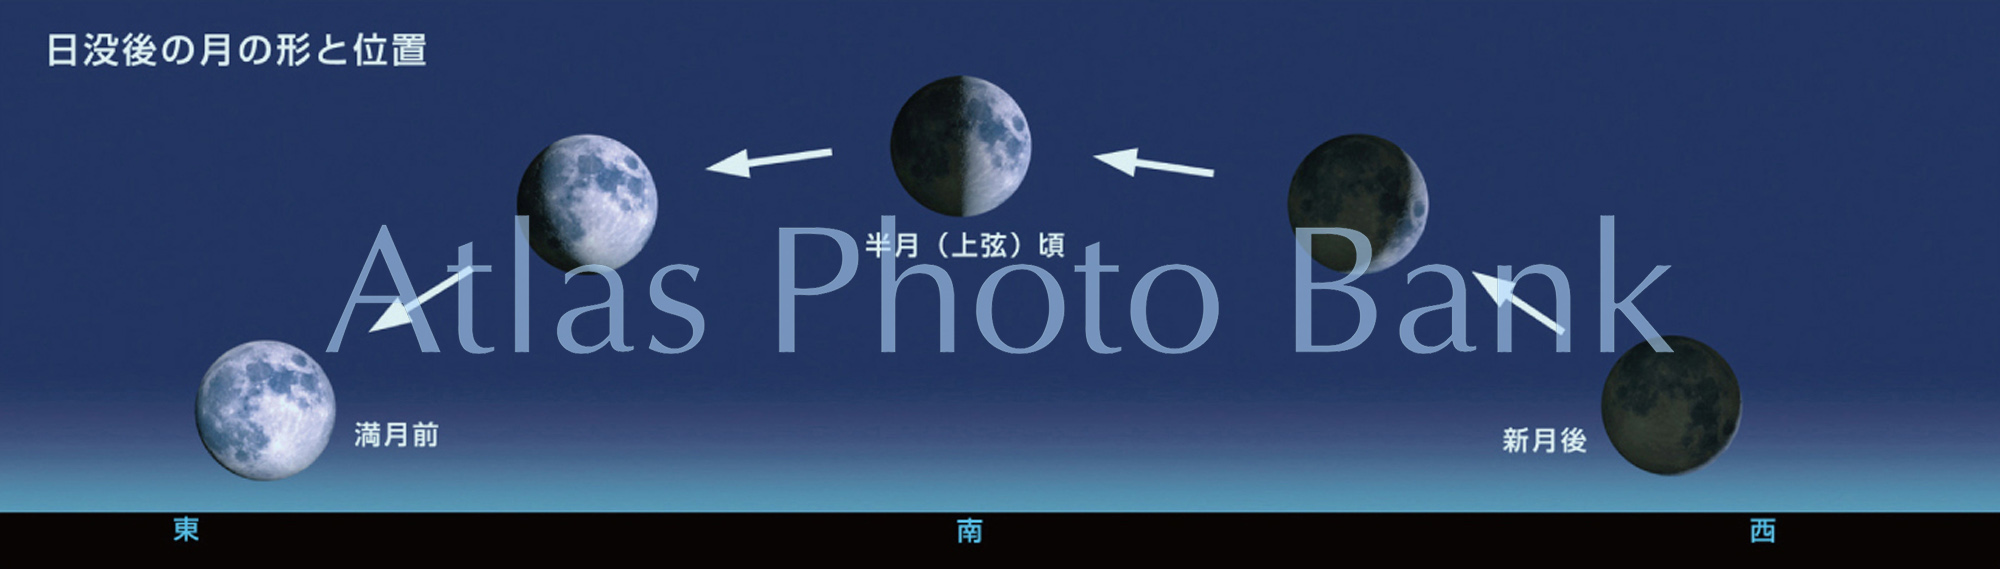 EF-050-日没後の月の形と位置